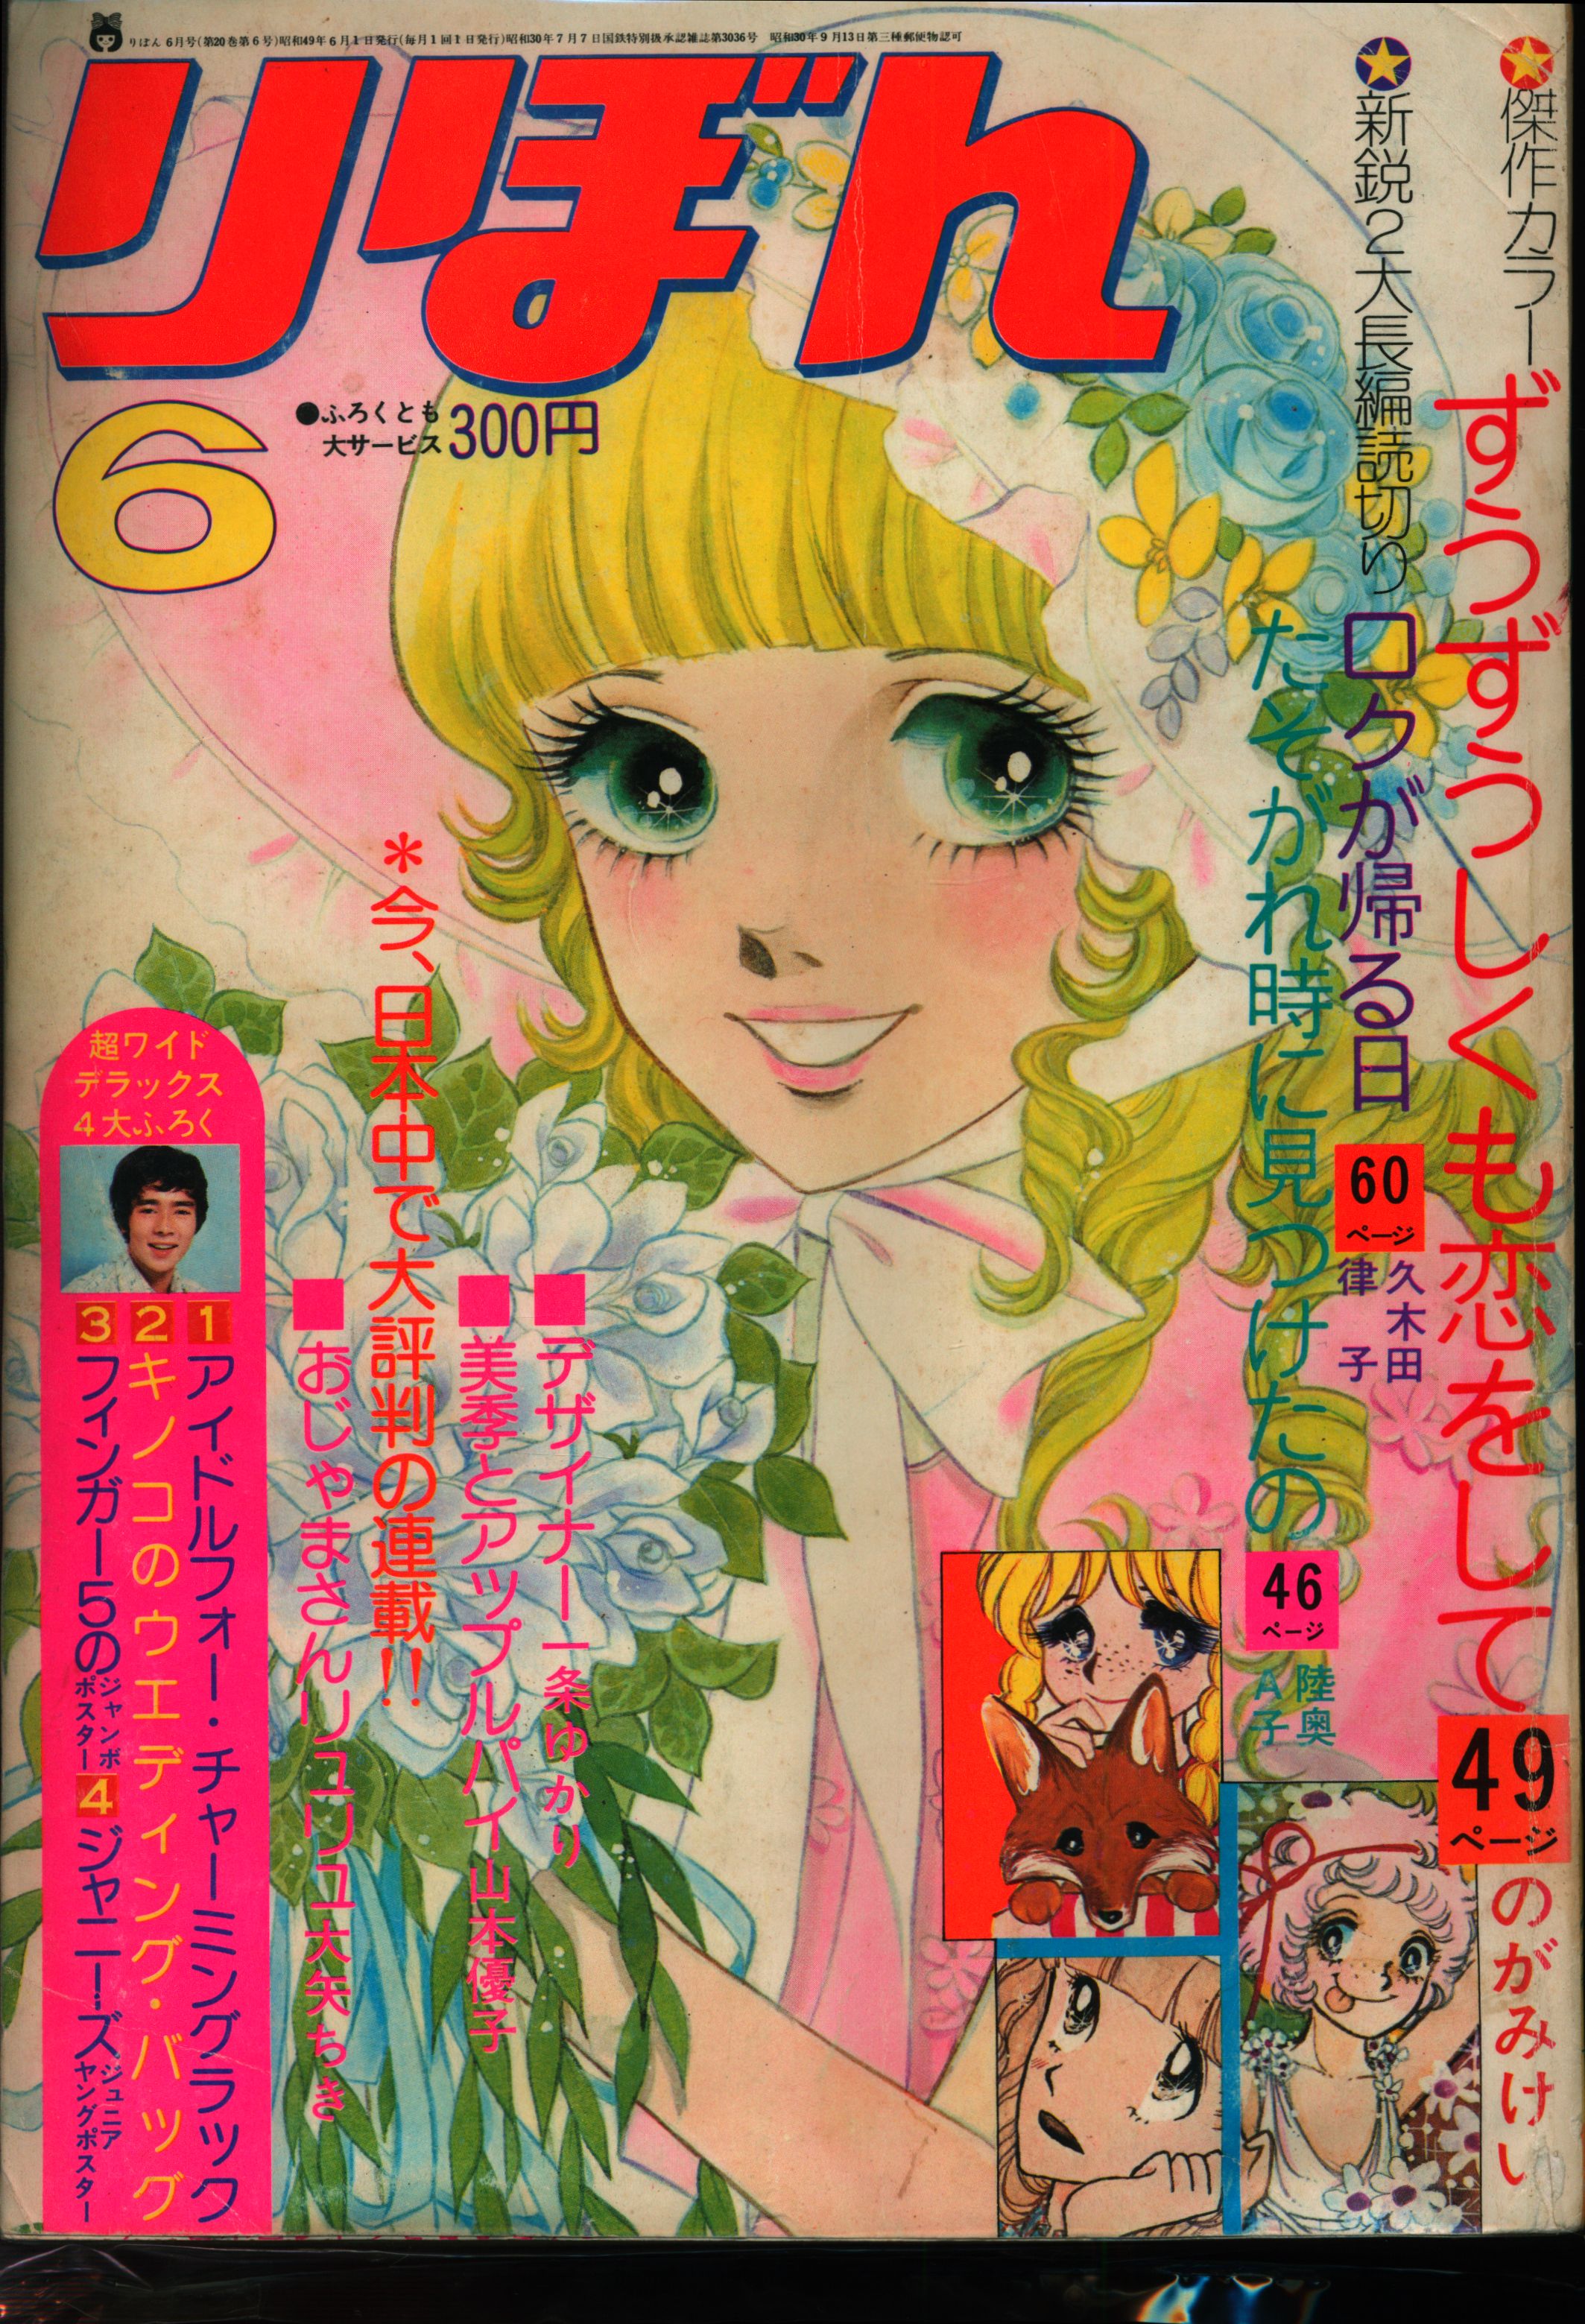 少女マンガ「りぼん」昭和50年 1975年 12冊セット マンガ 漫画 昭和 